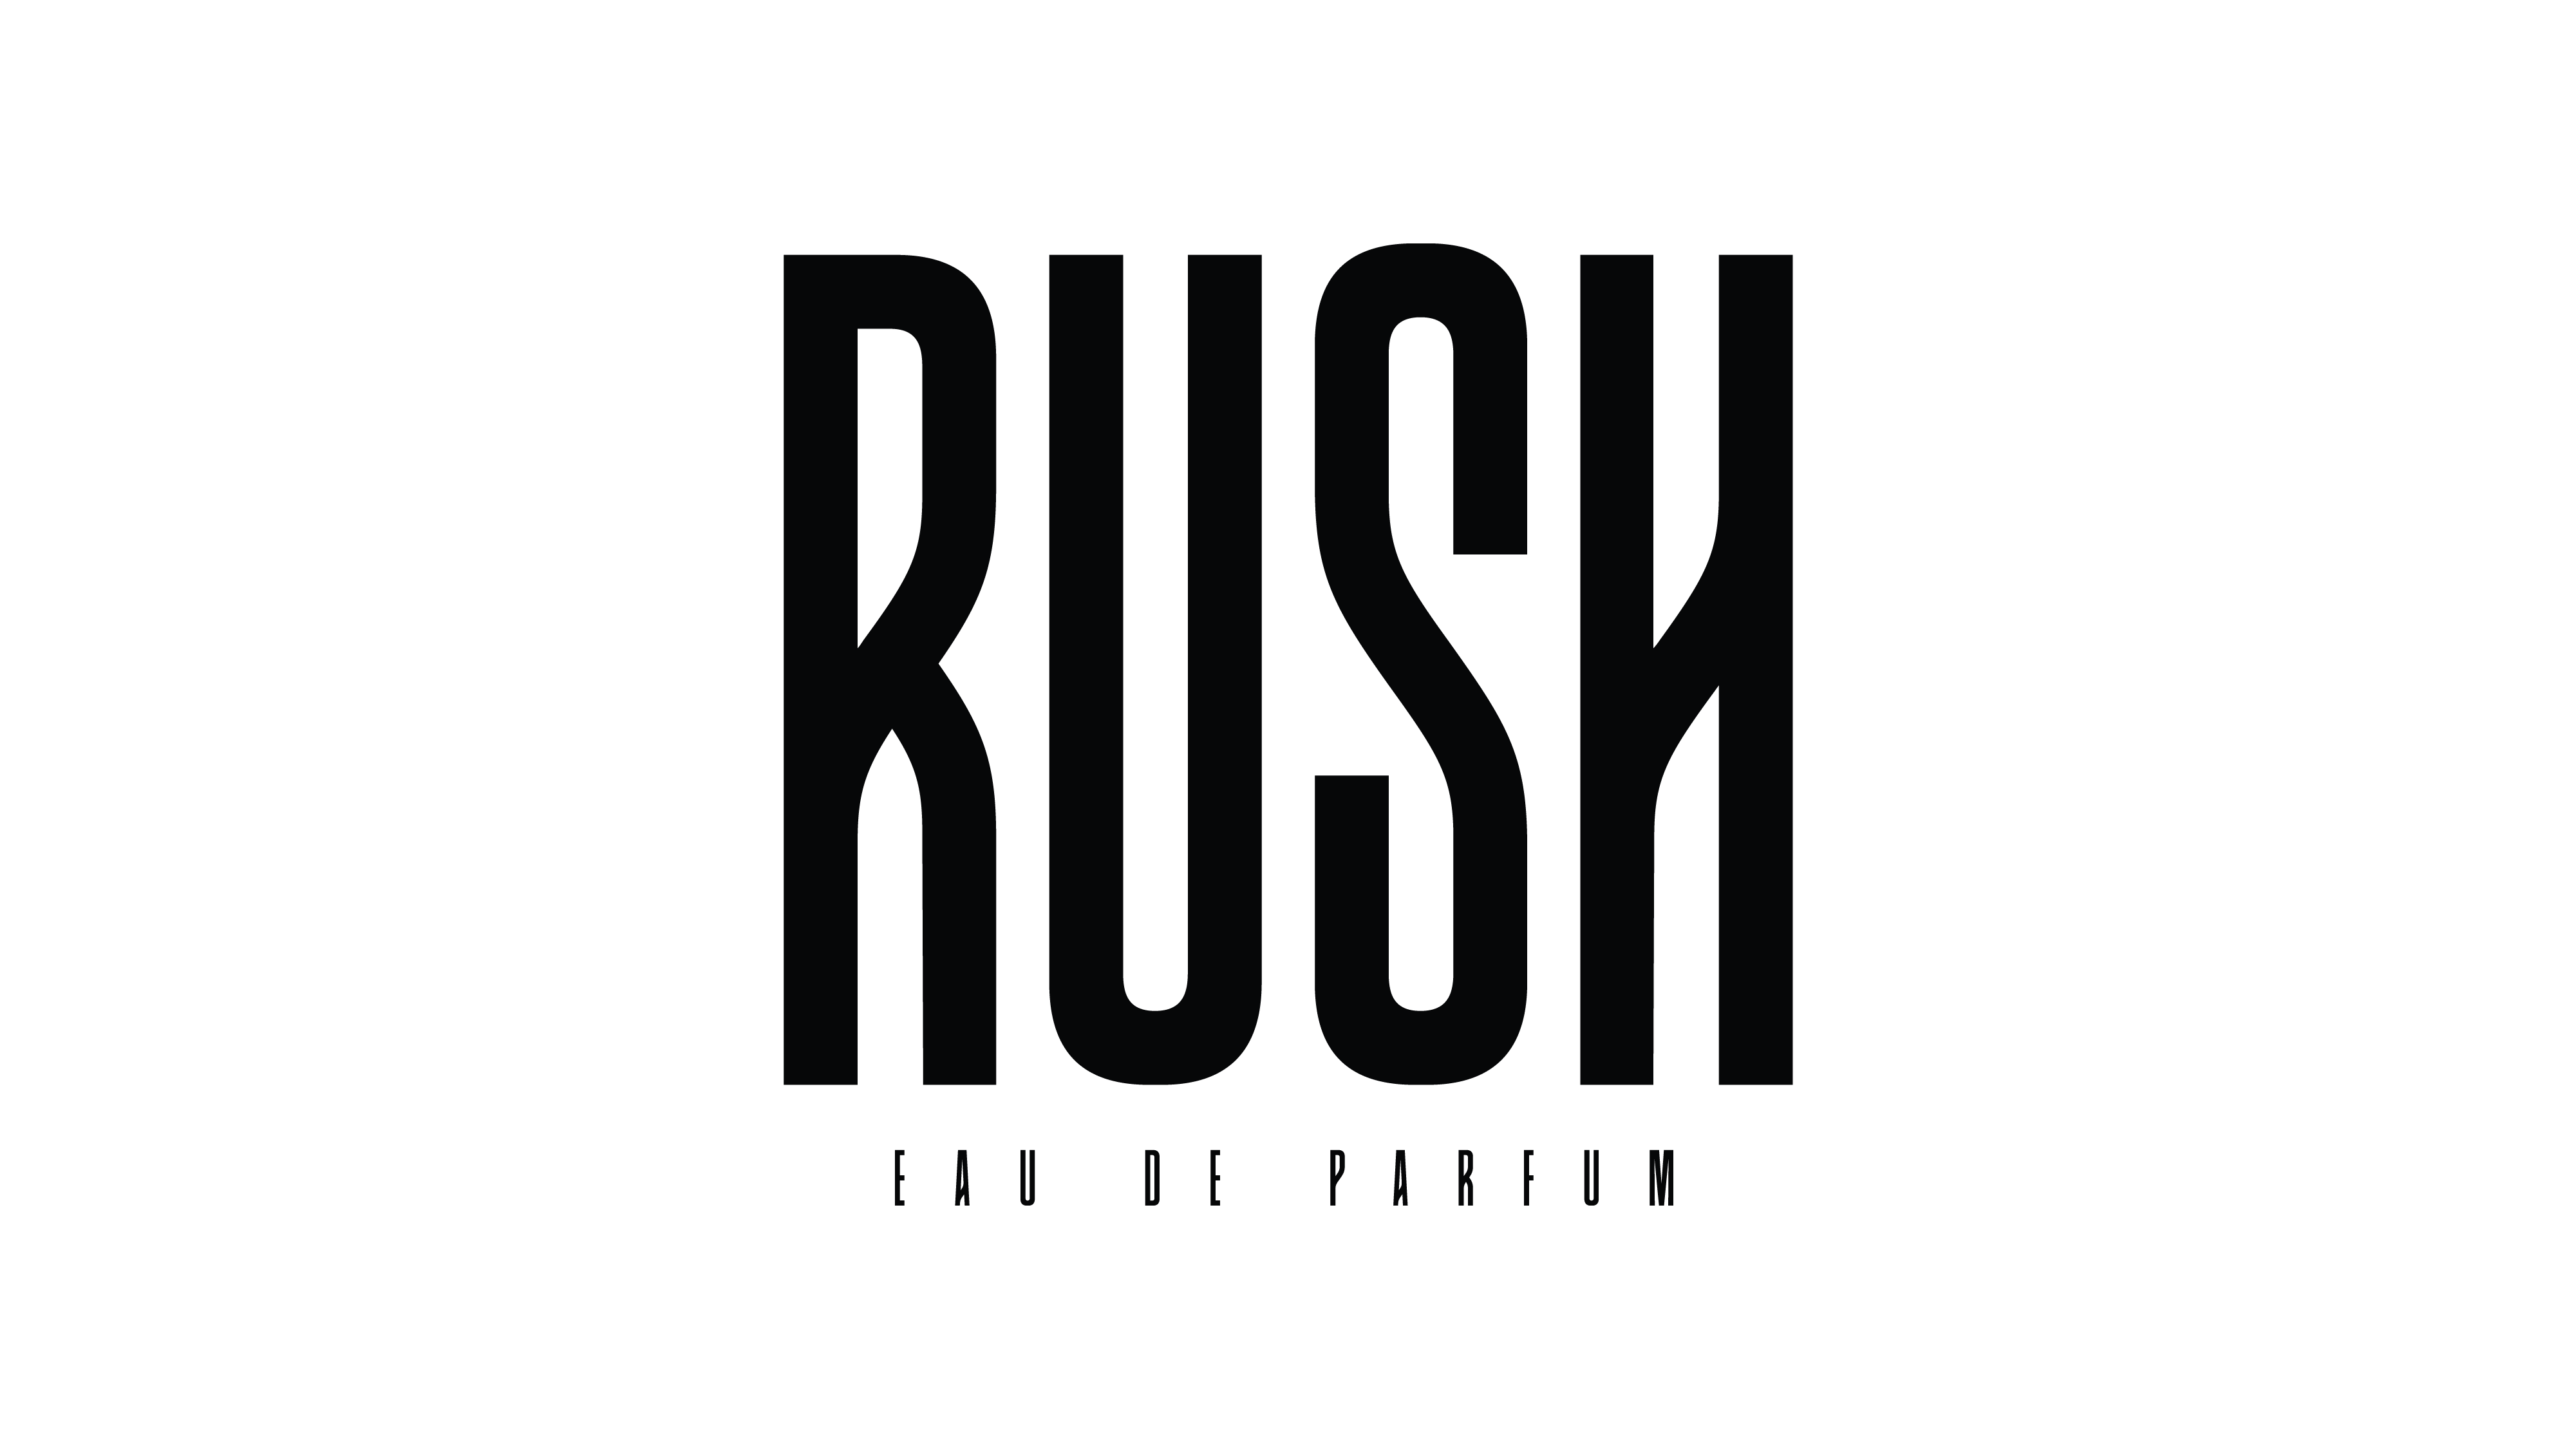 Rush Egypt